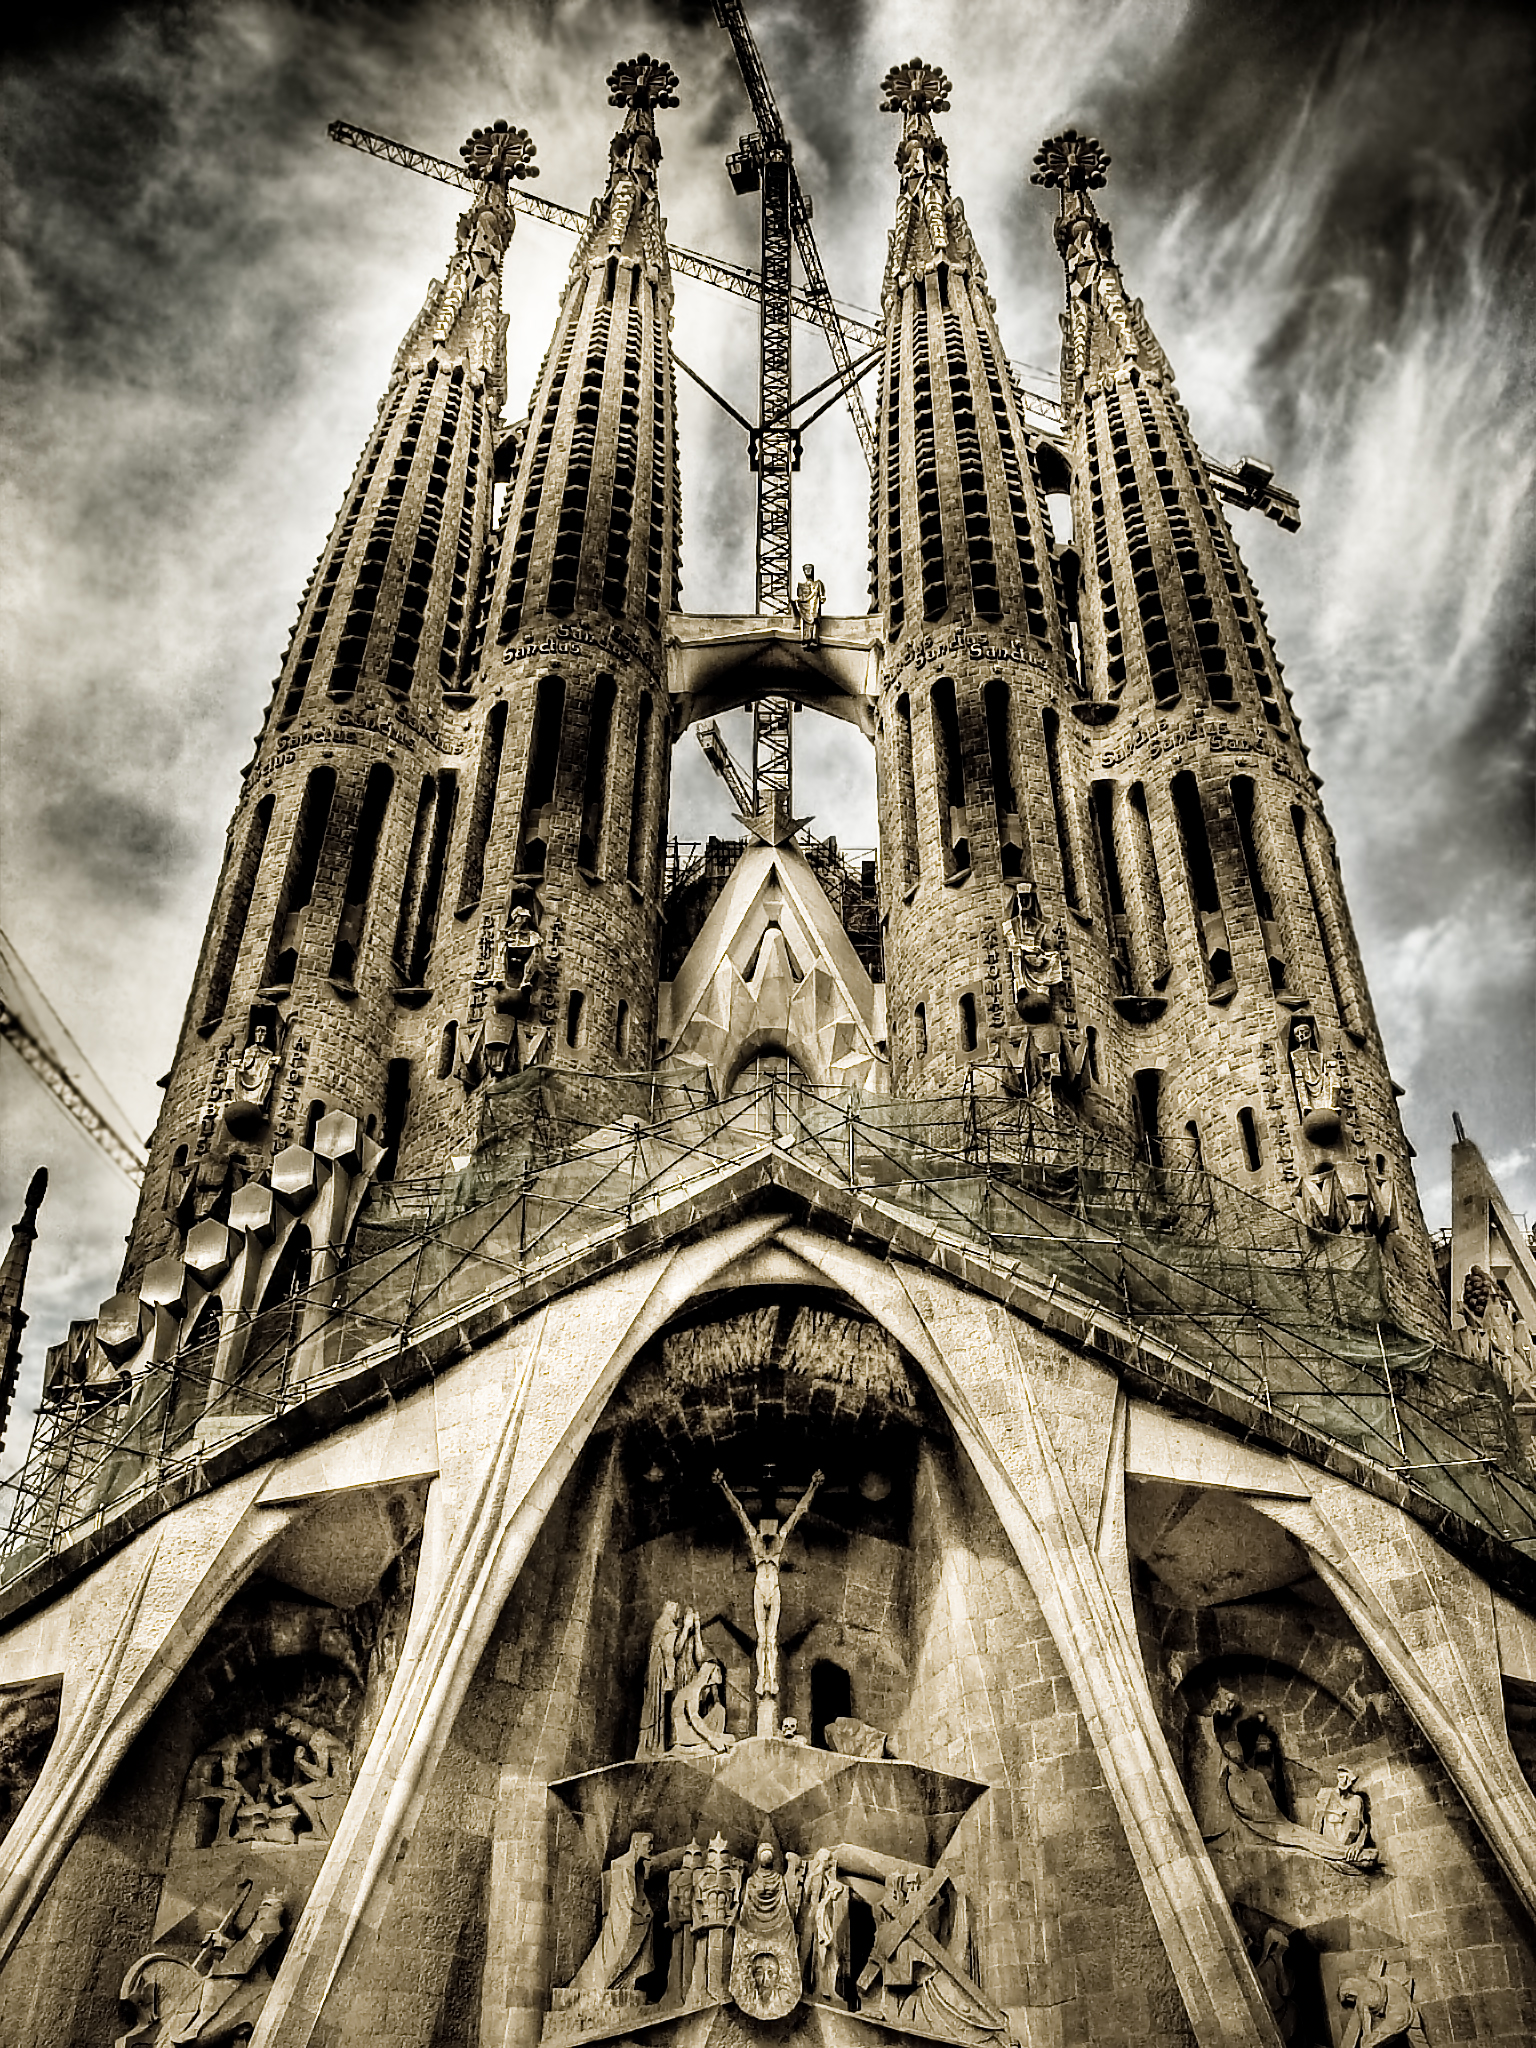 フリー画像 人工風景 建造物 建築物 教会 聖堂 サグラダ ファミリア Hdr画像 スペイン風景 バルセロナ 画像素材なら 無料 フリー写真素材のフリーフォト